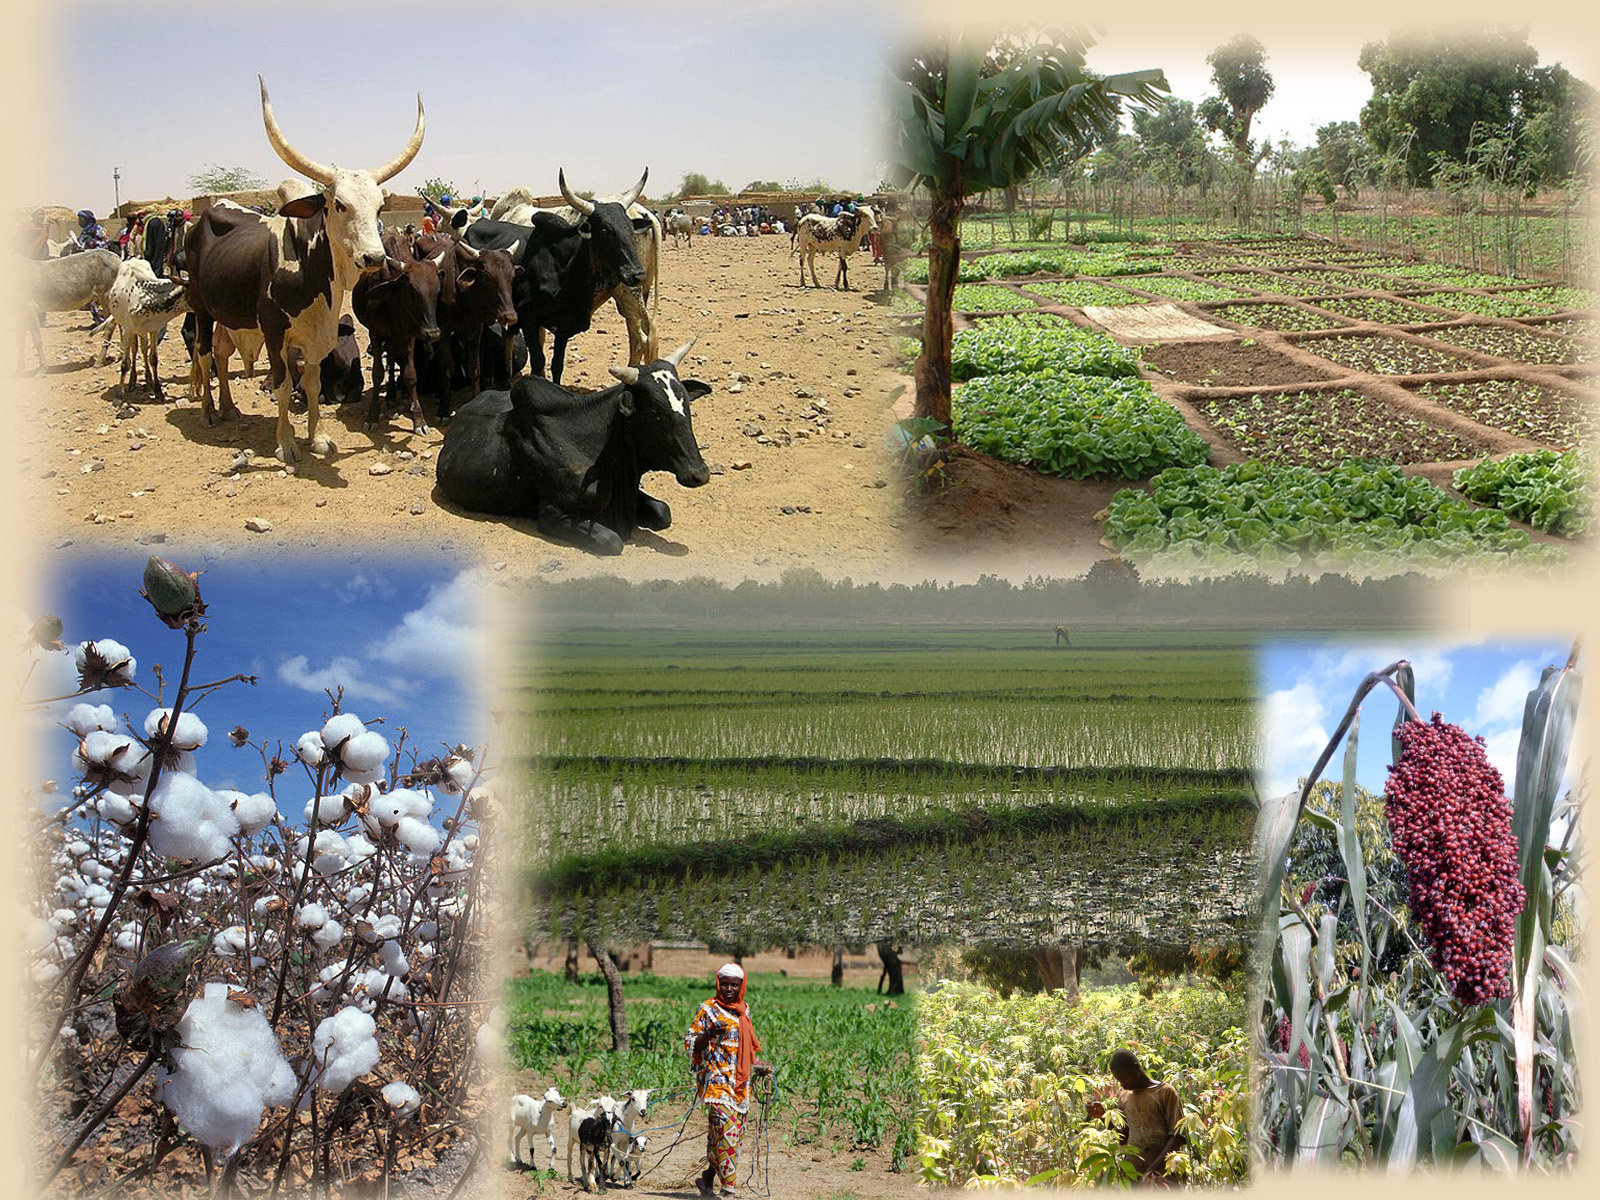 Les secteurs ouest africains du coton, du maïs et de l’élevage.